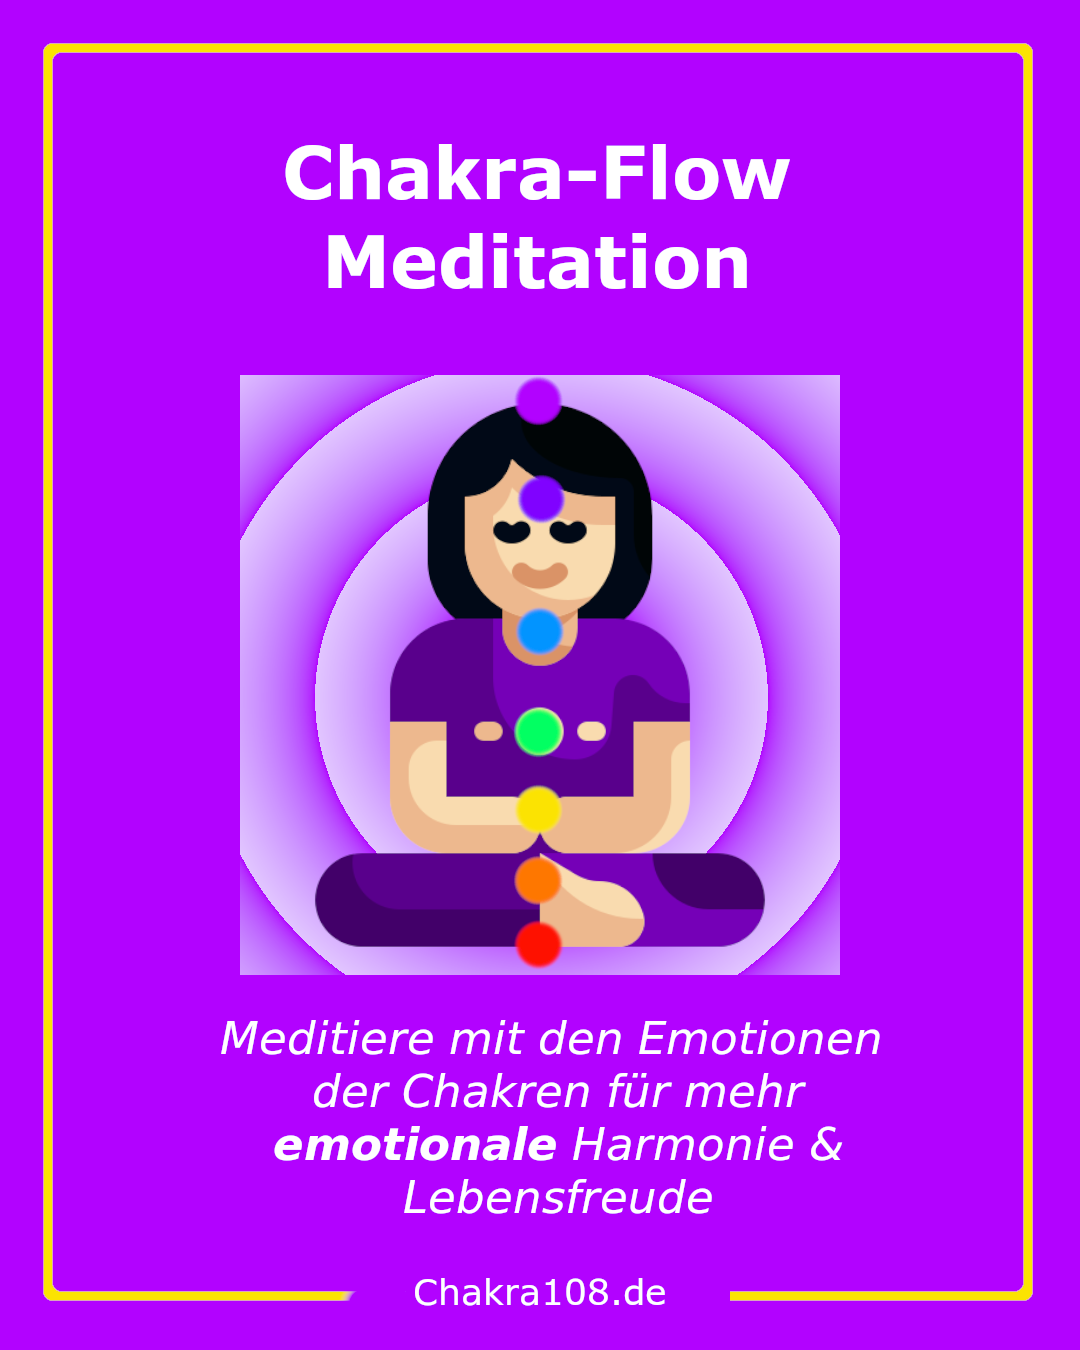 Chakra-Flow-Meditaiton: Meditiere mit den Emotionen in den Chakren